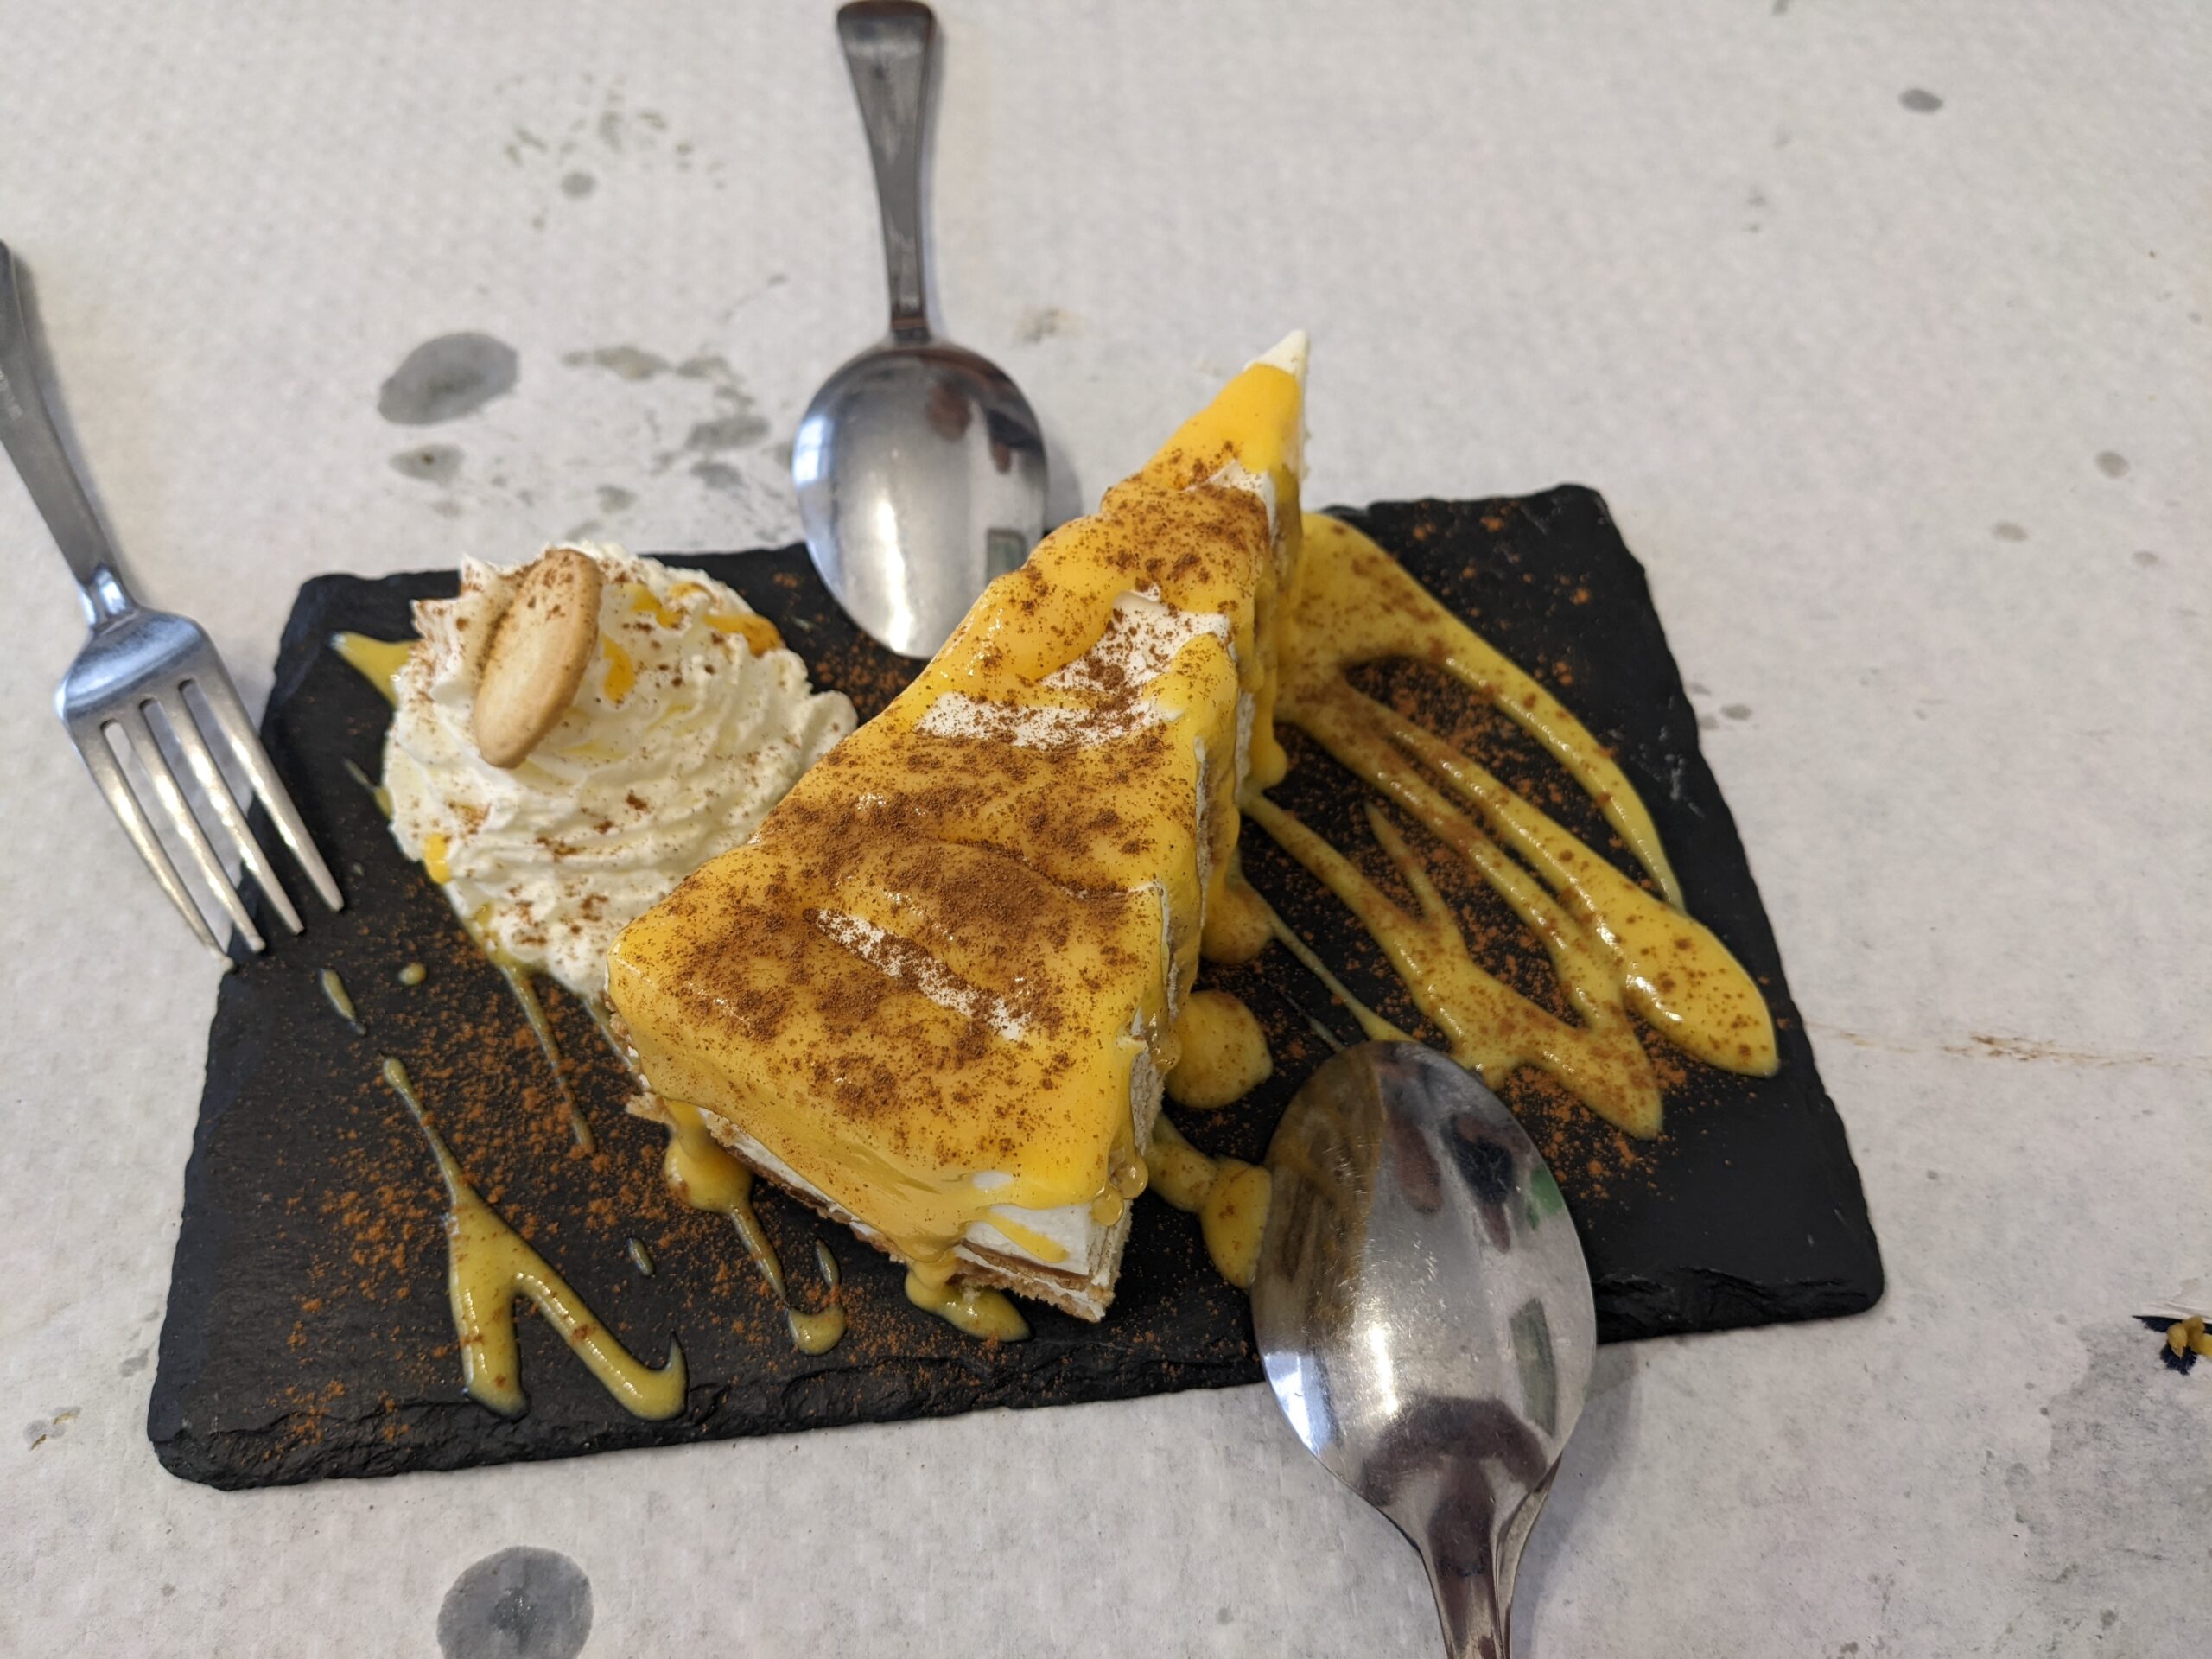 Indulgent dessert at Restaurante Portelas